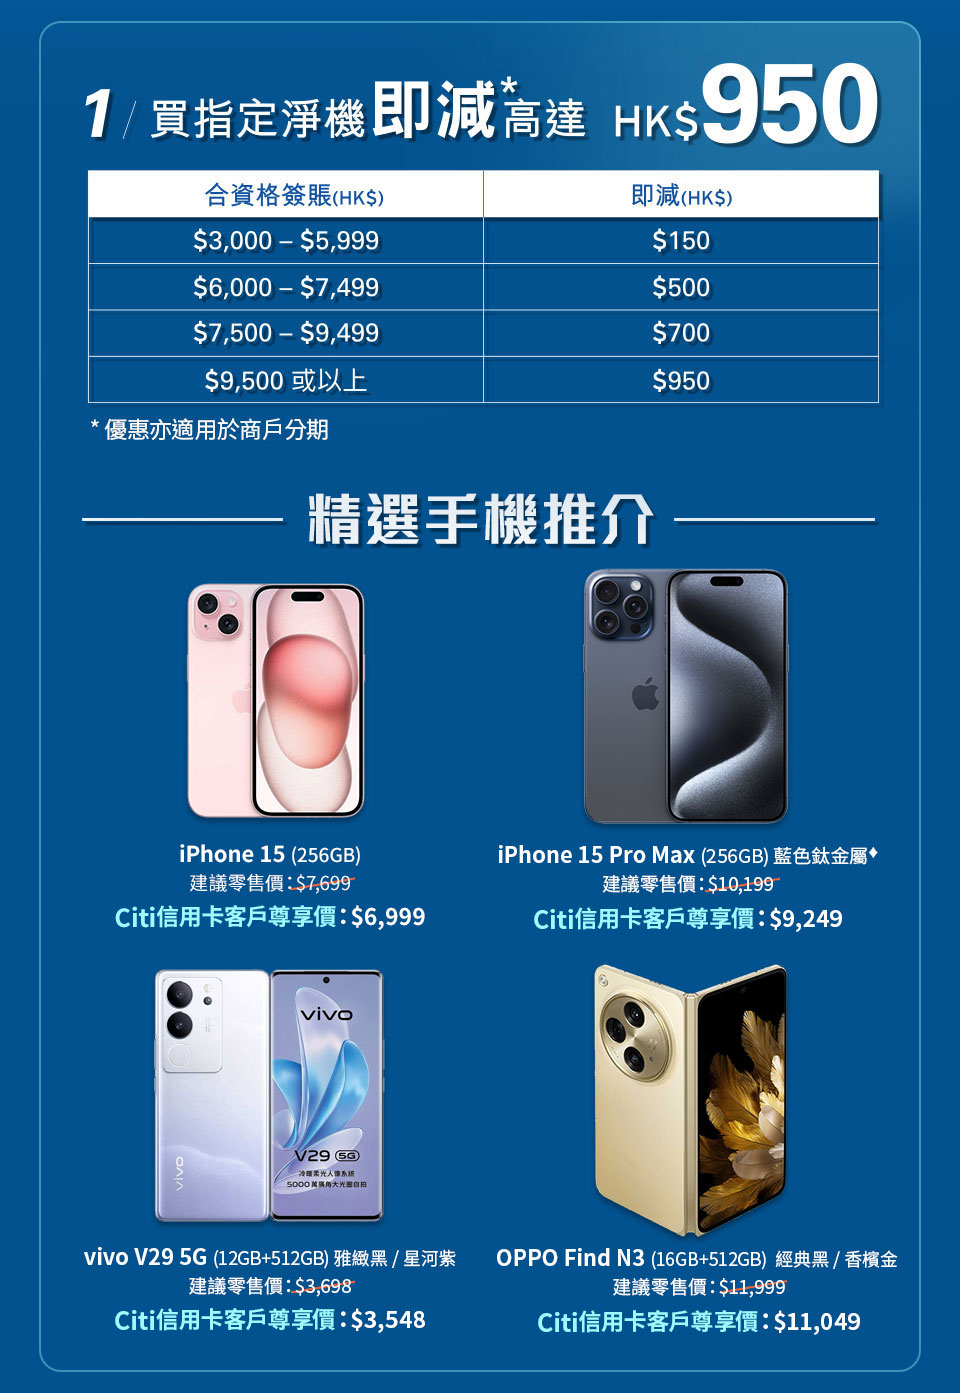 1/ 選購指定淨機即減高達 HK$950* | 精選手機推介